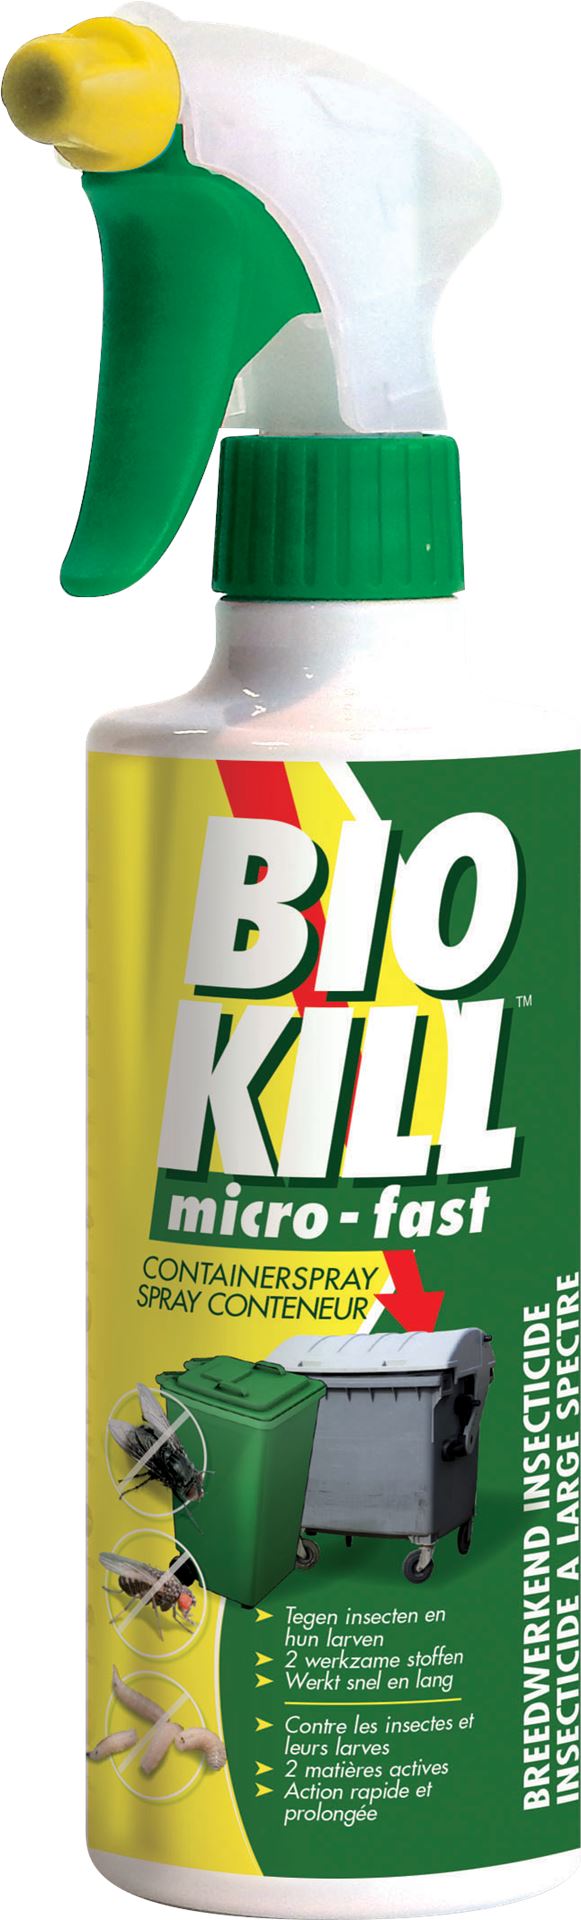 Bio-Kill-container-spray